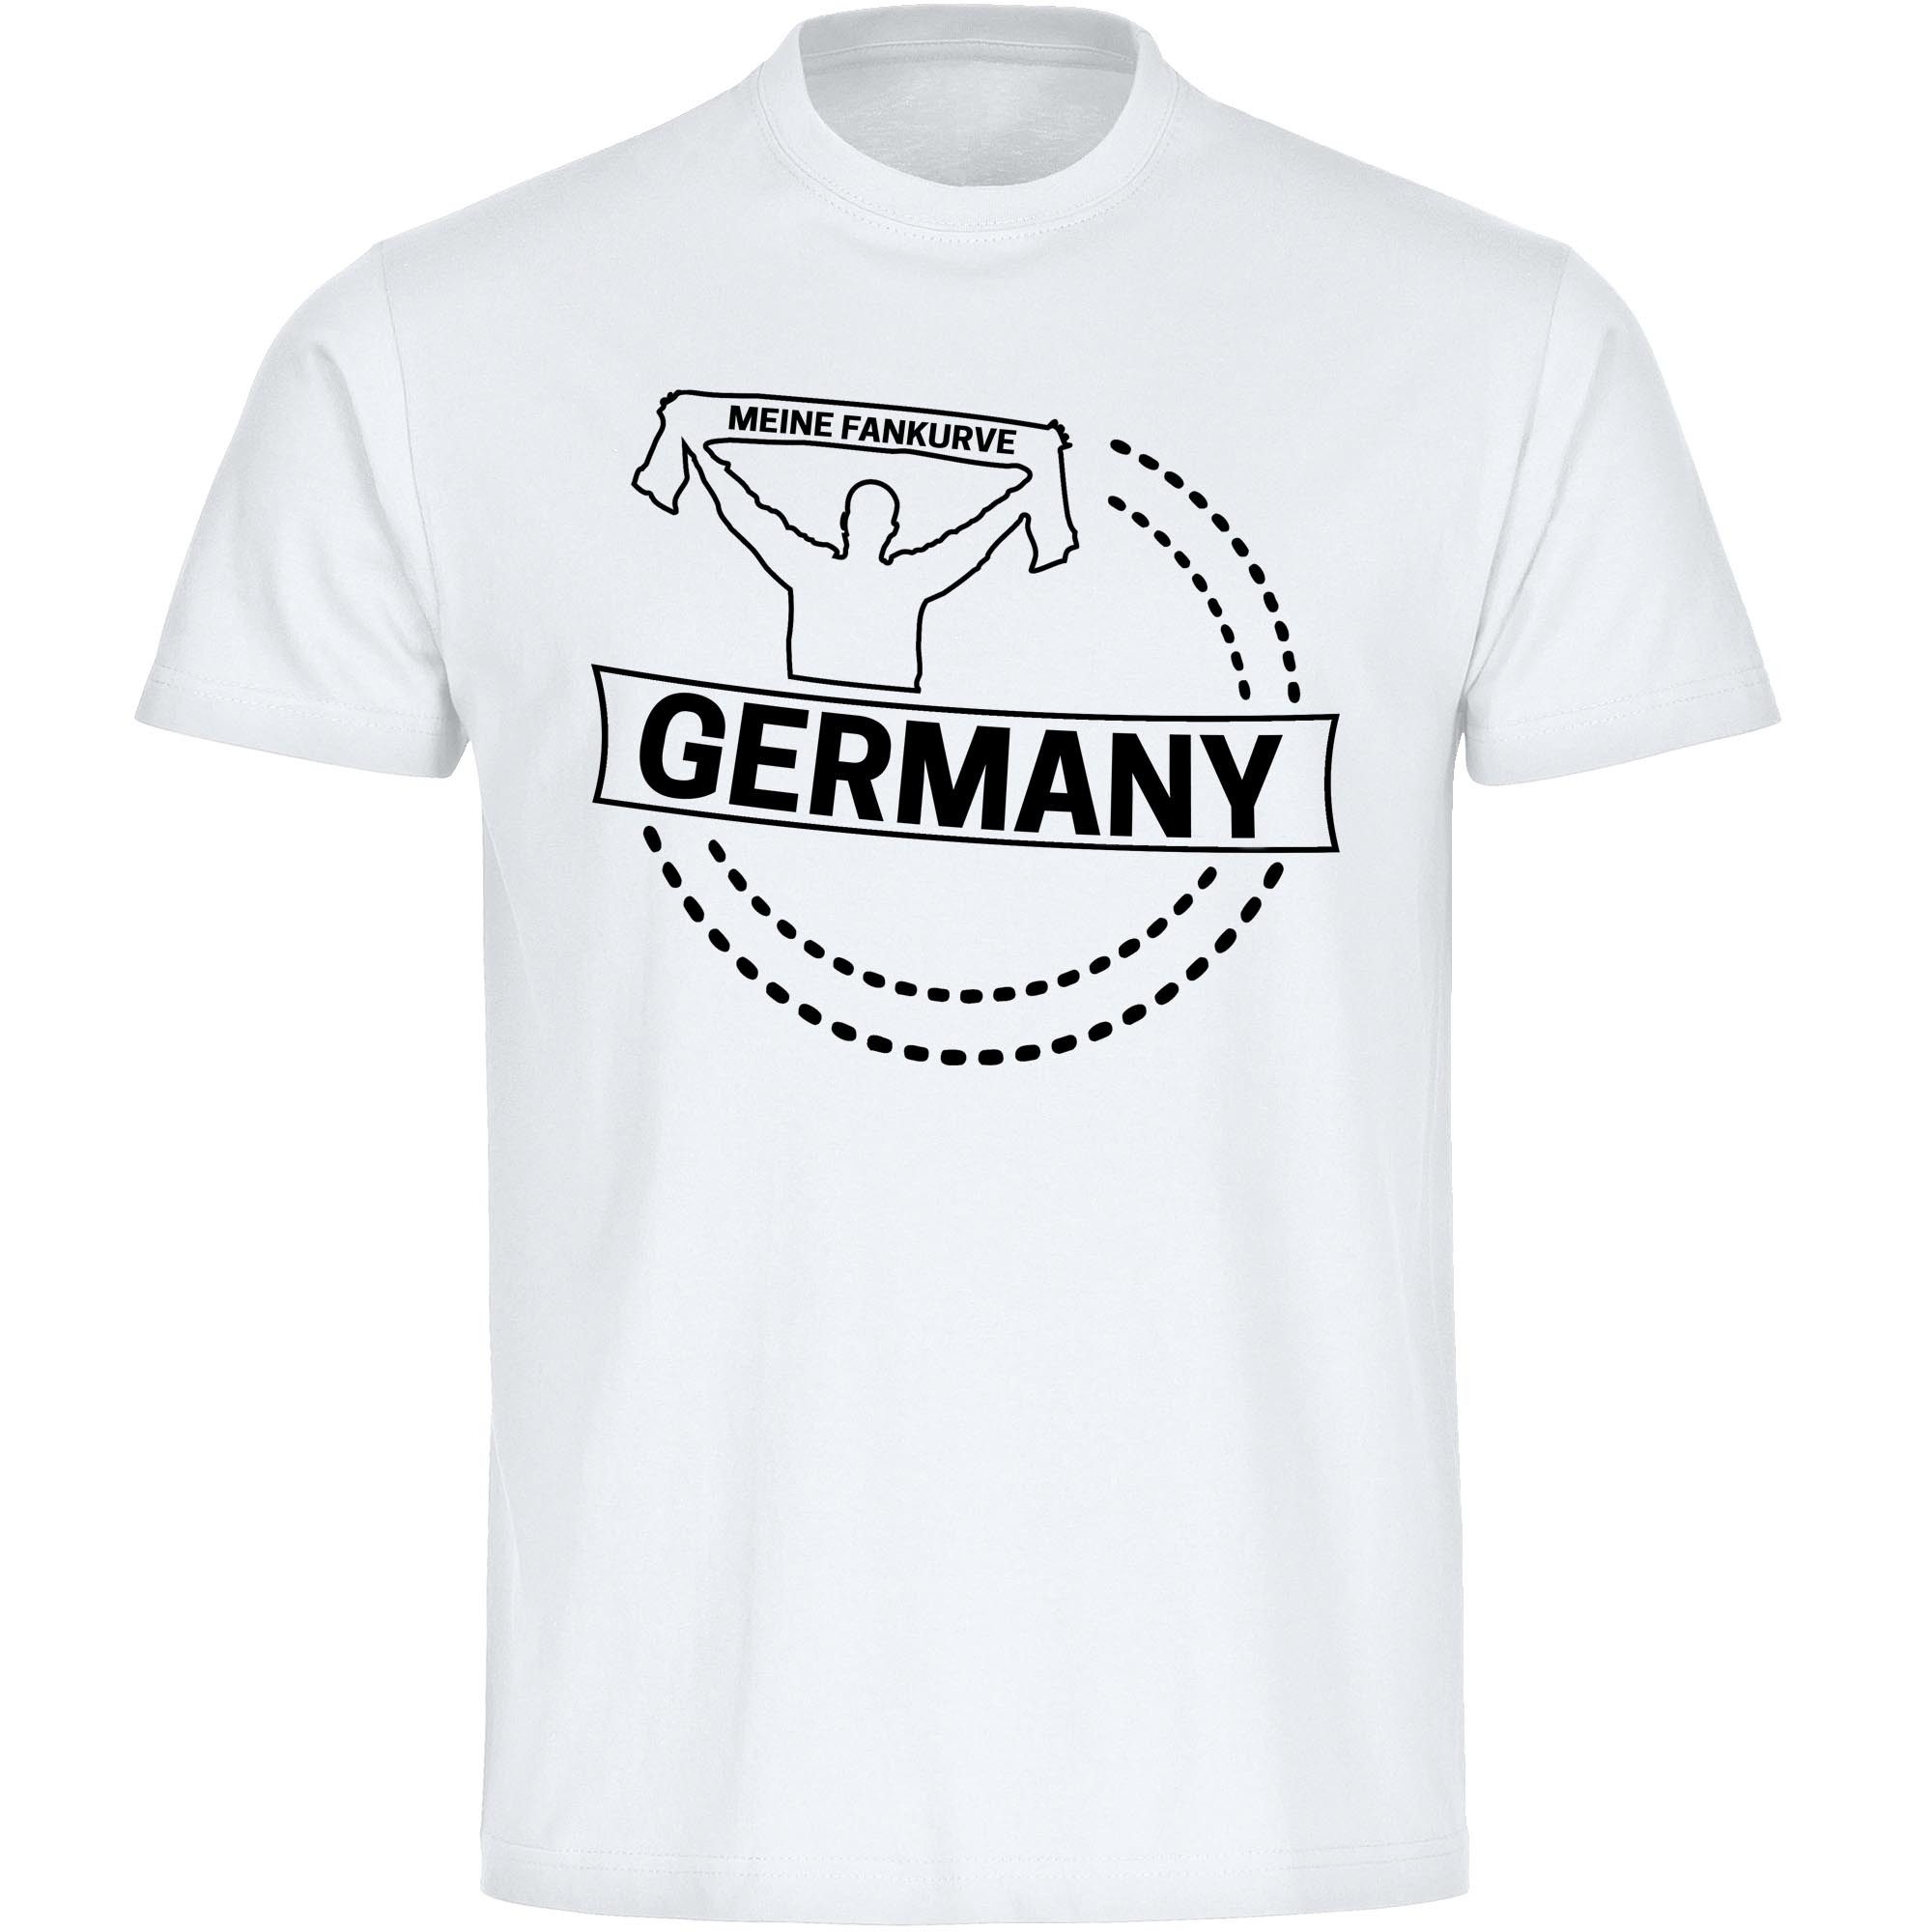 multifanshop T-Shirt Kinder Germany - Meine Fankurve - Boy Girl